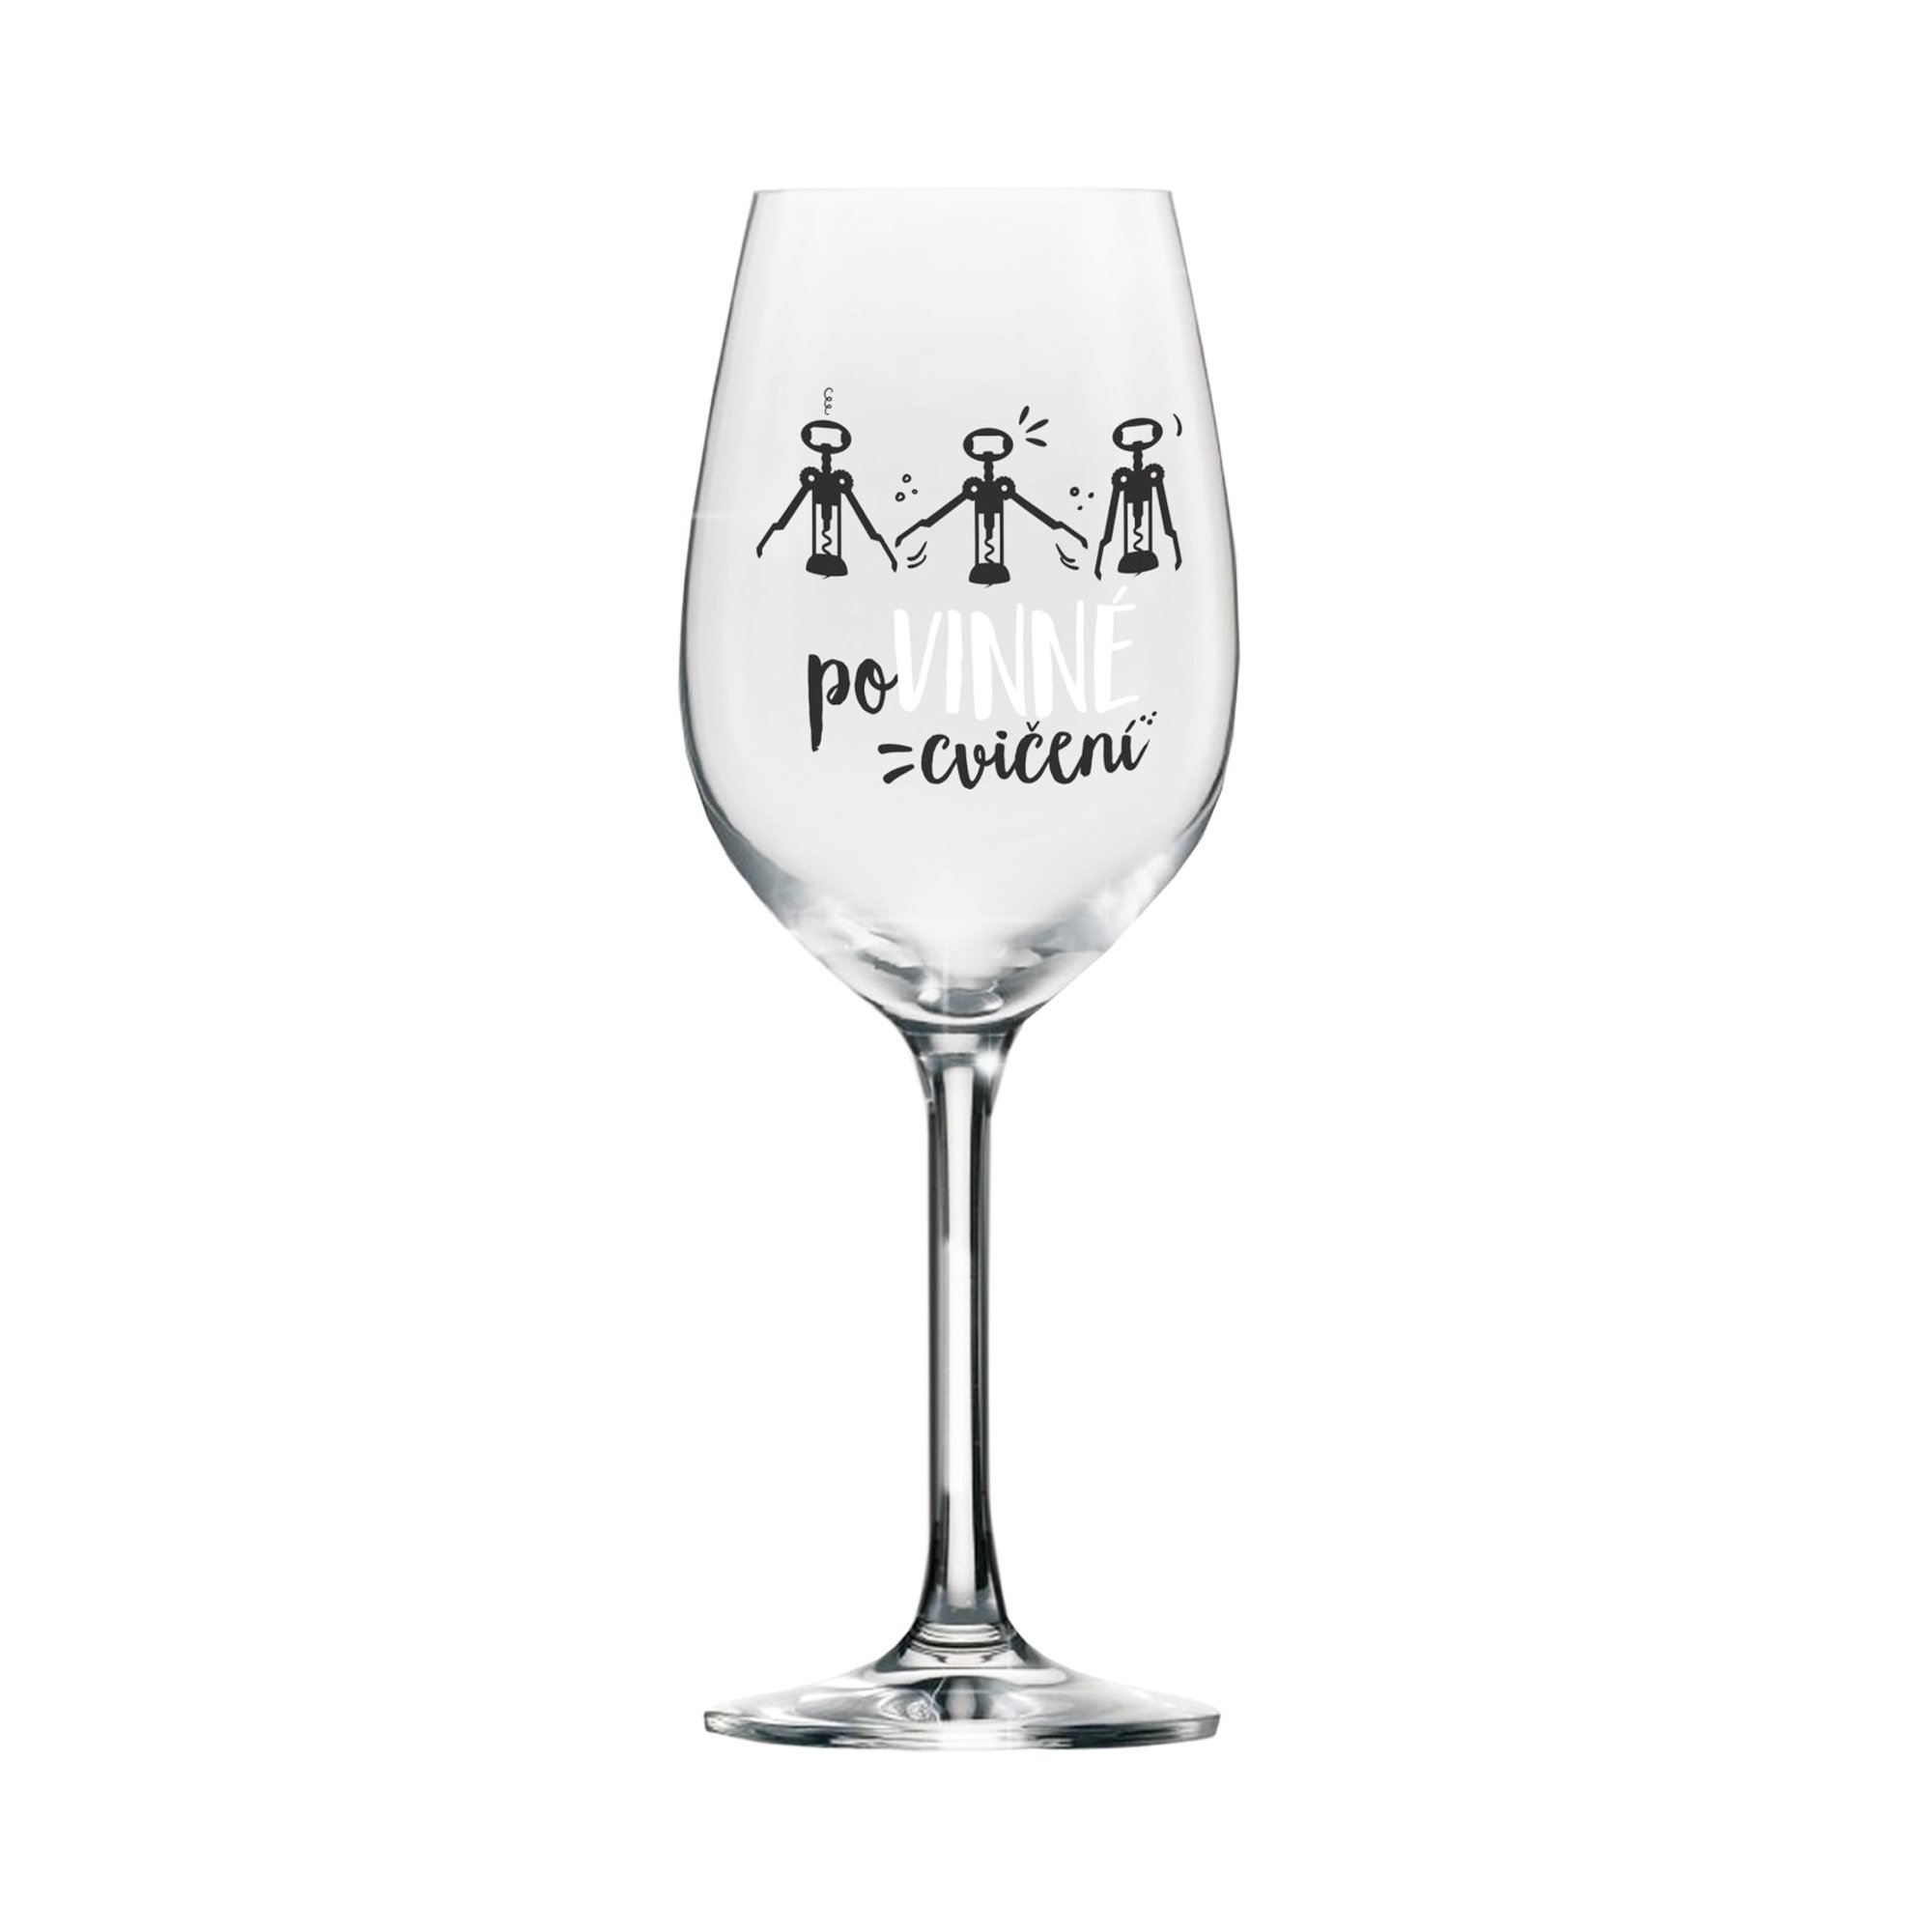 Albi Mega sklenice na víno - Povinné cvičení - Albi